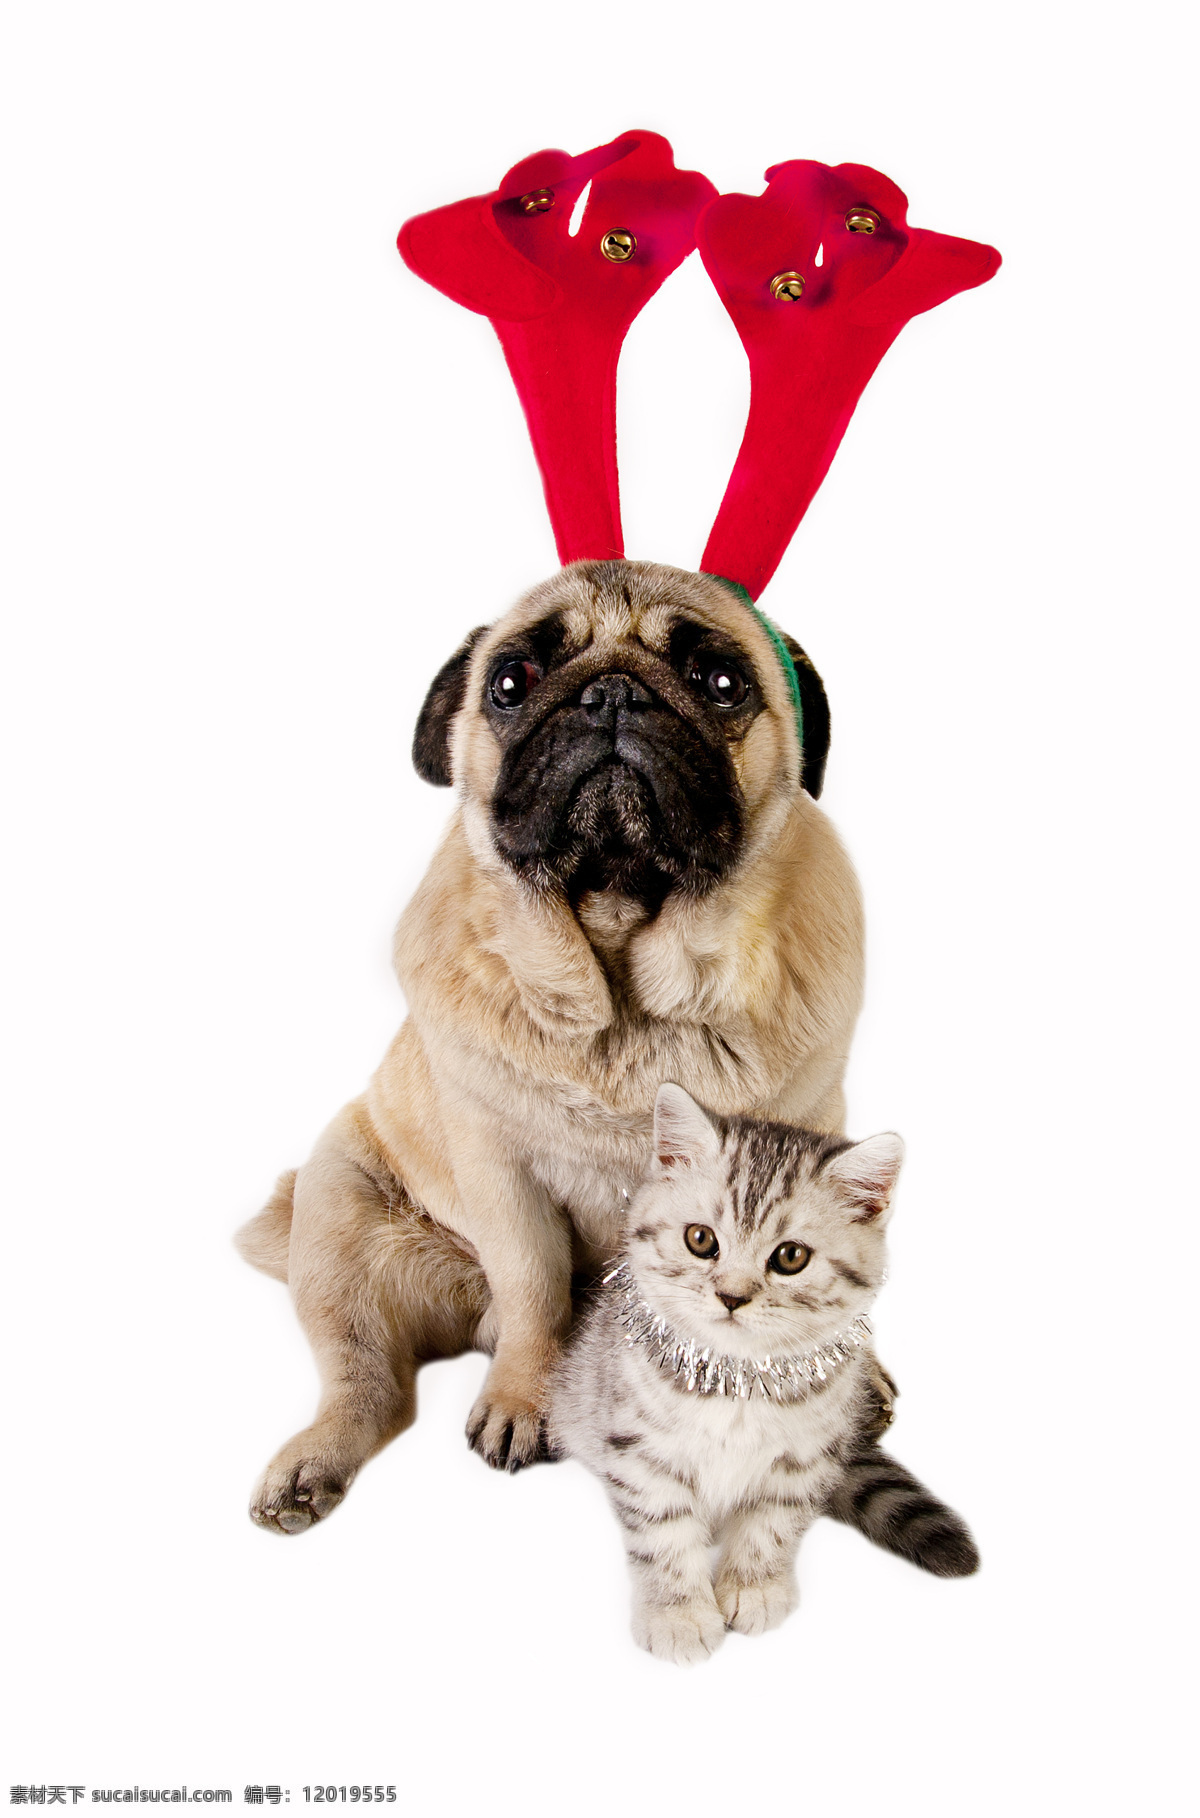 圣诞 狗 猫 圣诞狗 圣诞猫 小狗 小猫 圣诞节 圣诞动物 小动物 可爱 狗和猫 狗狗图片 生物世界